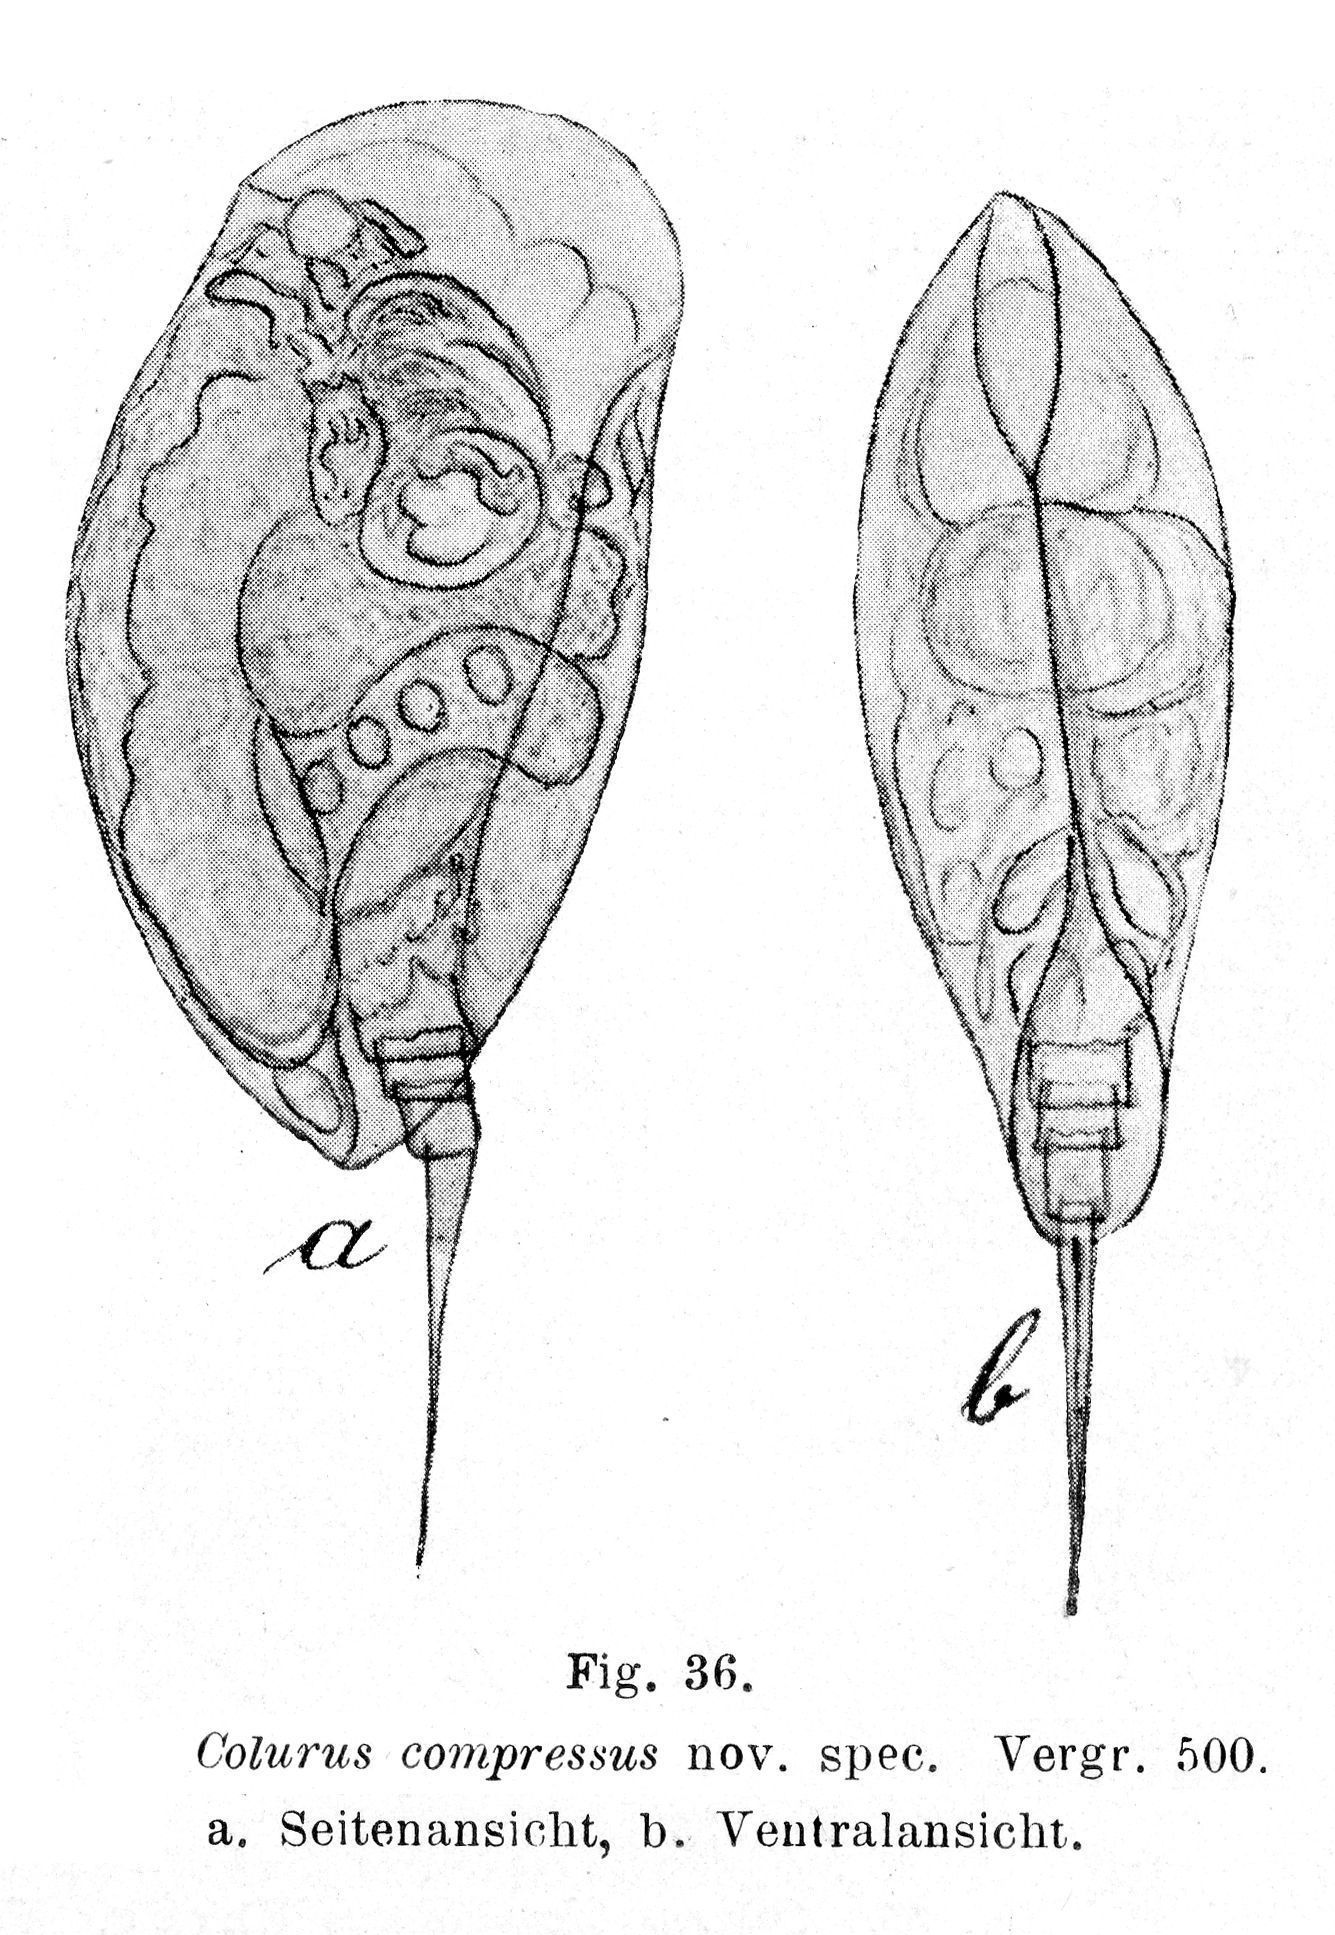 Image of Colurella colurus compressa (Lucks 1830)